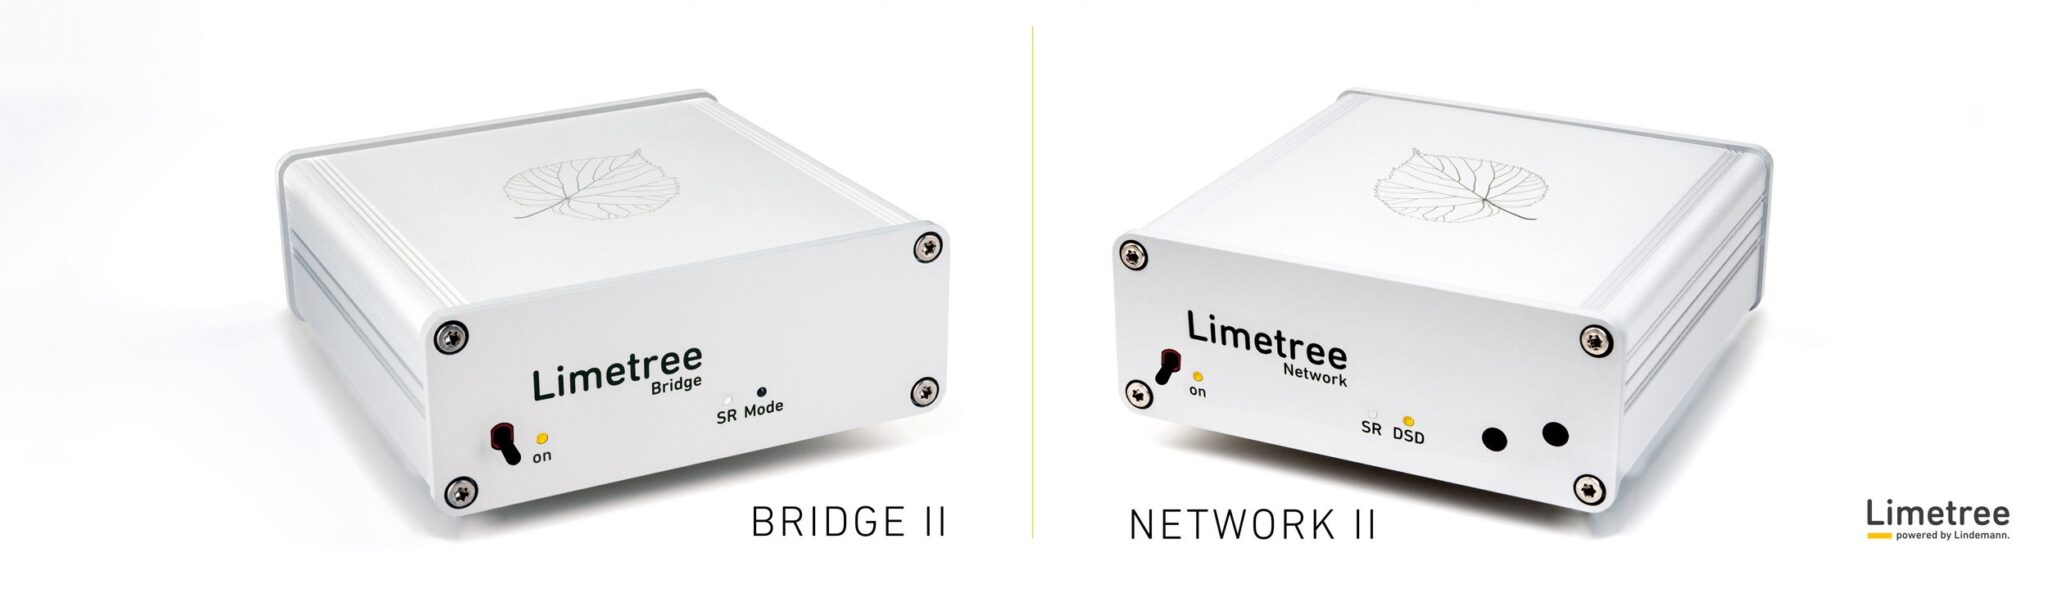 Limetree Network II - Bridge II